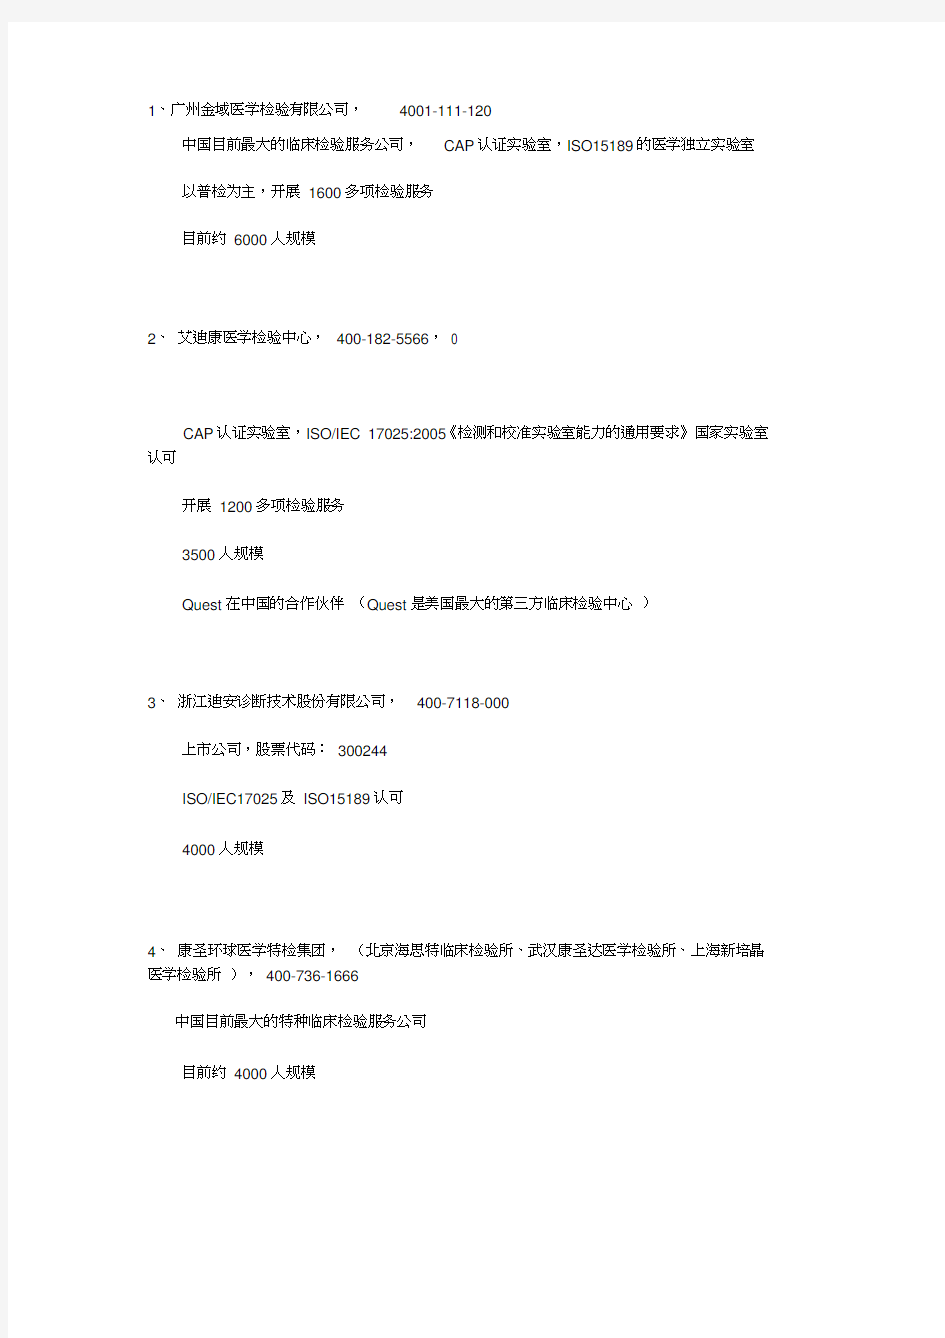 中国第三方临床检验公司名单